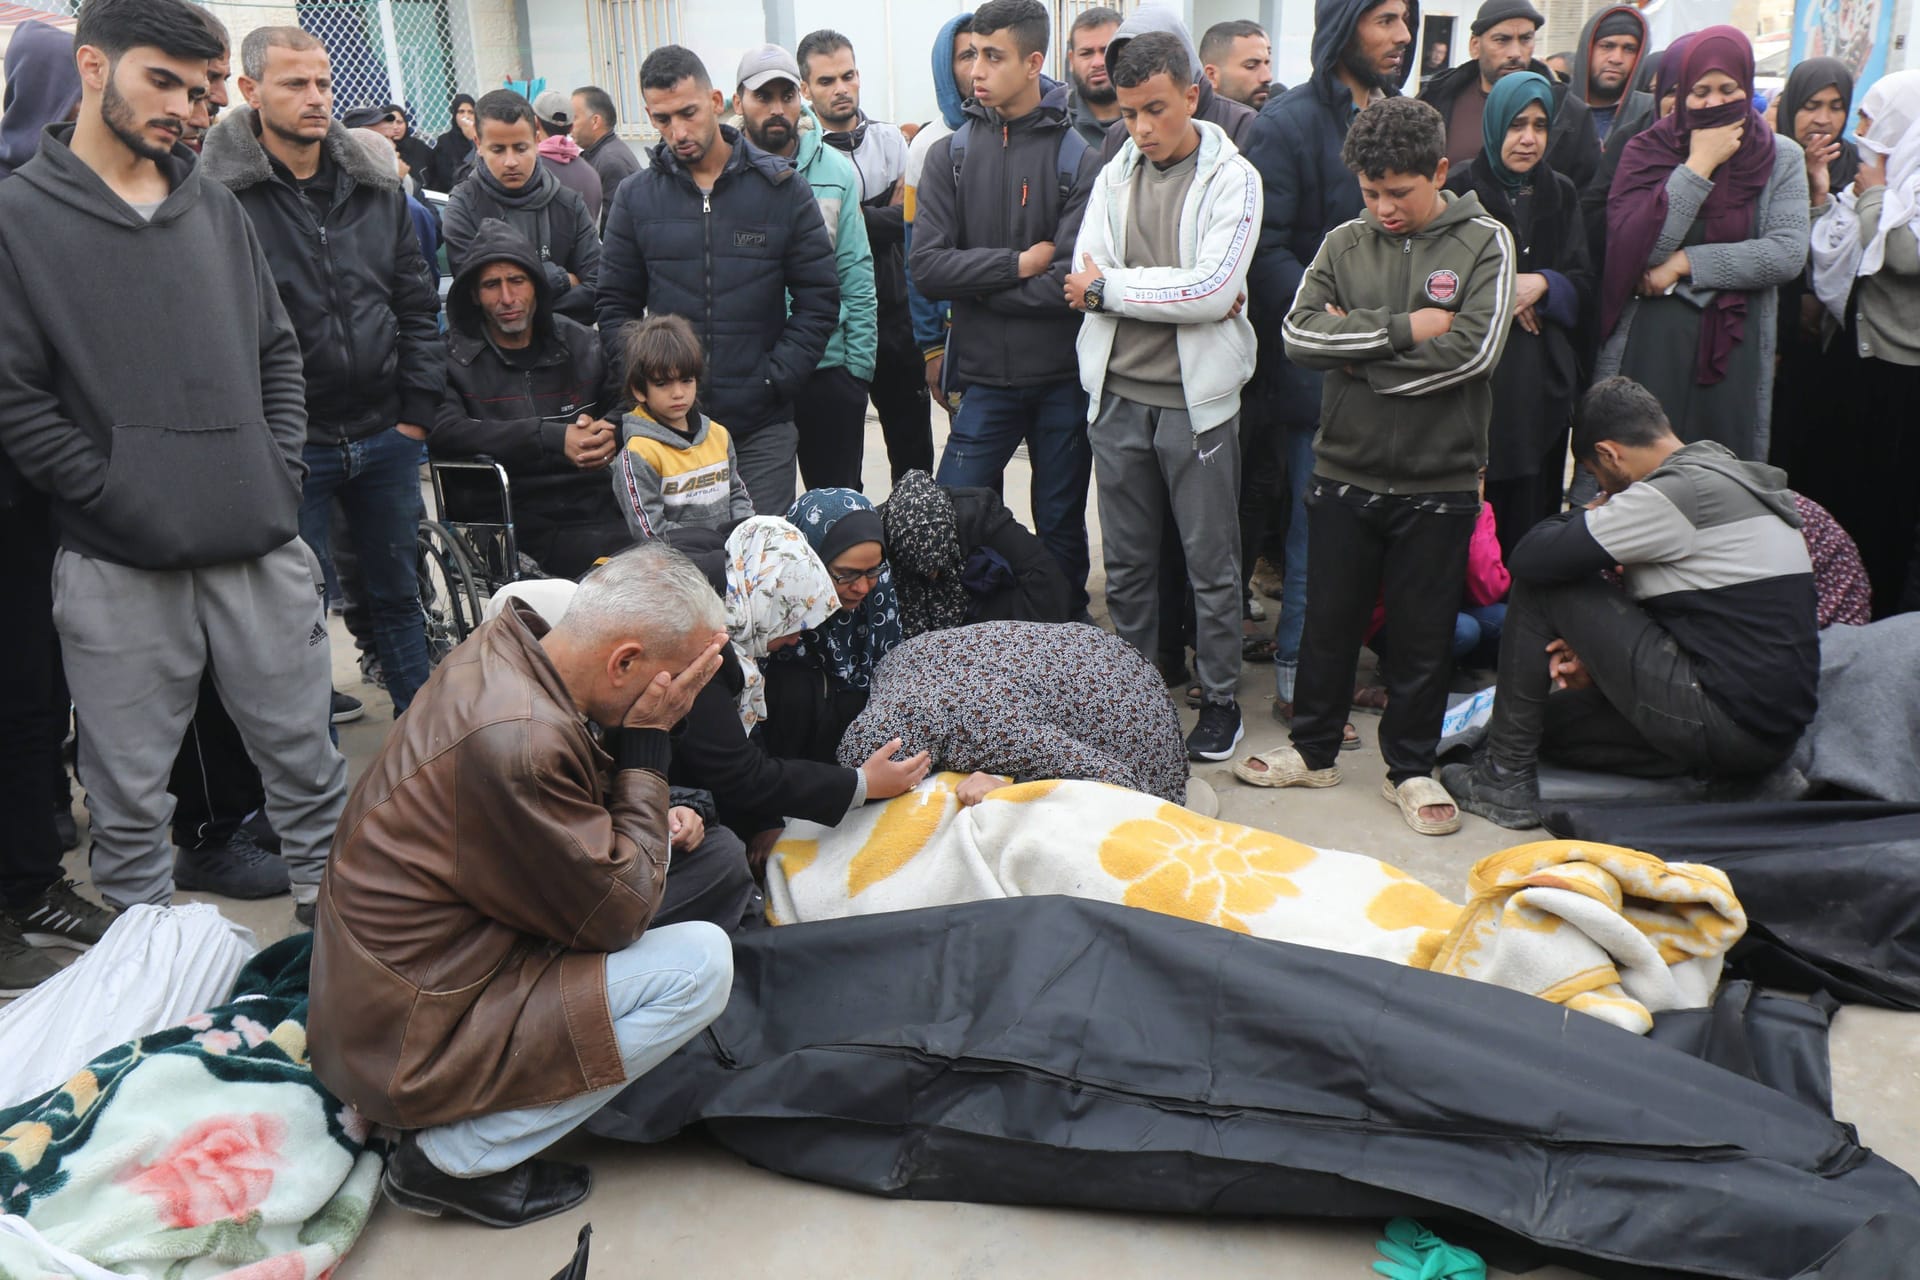 Palästinenser trauern um getötete Angehörige.